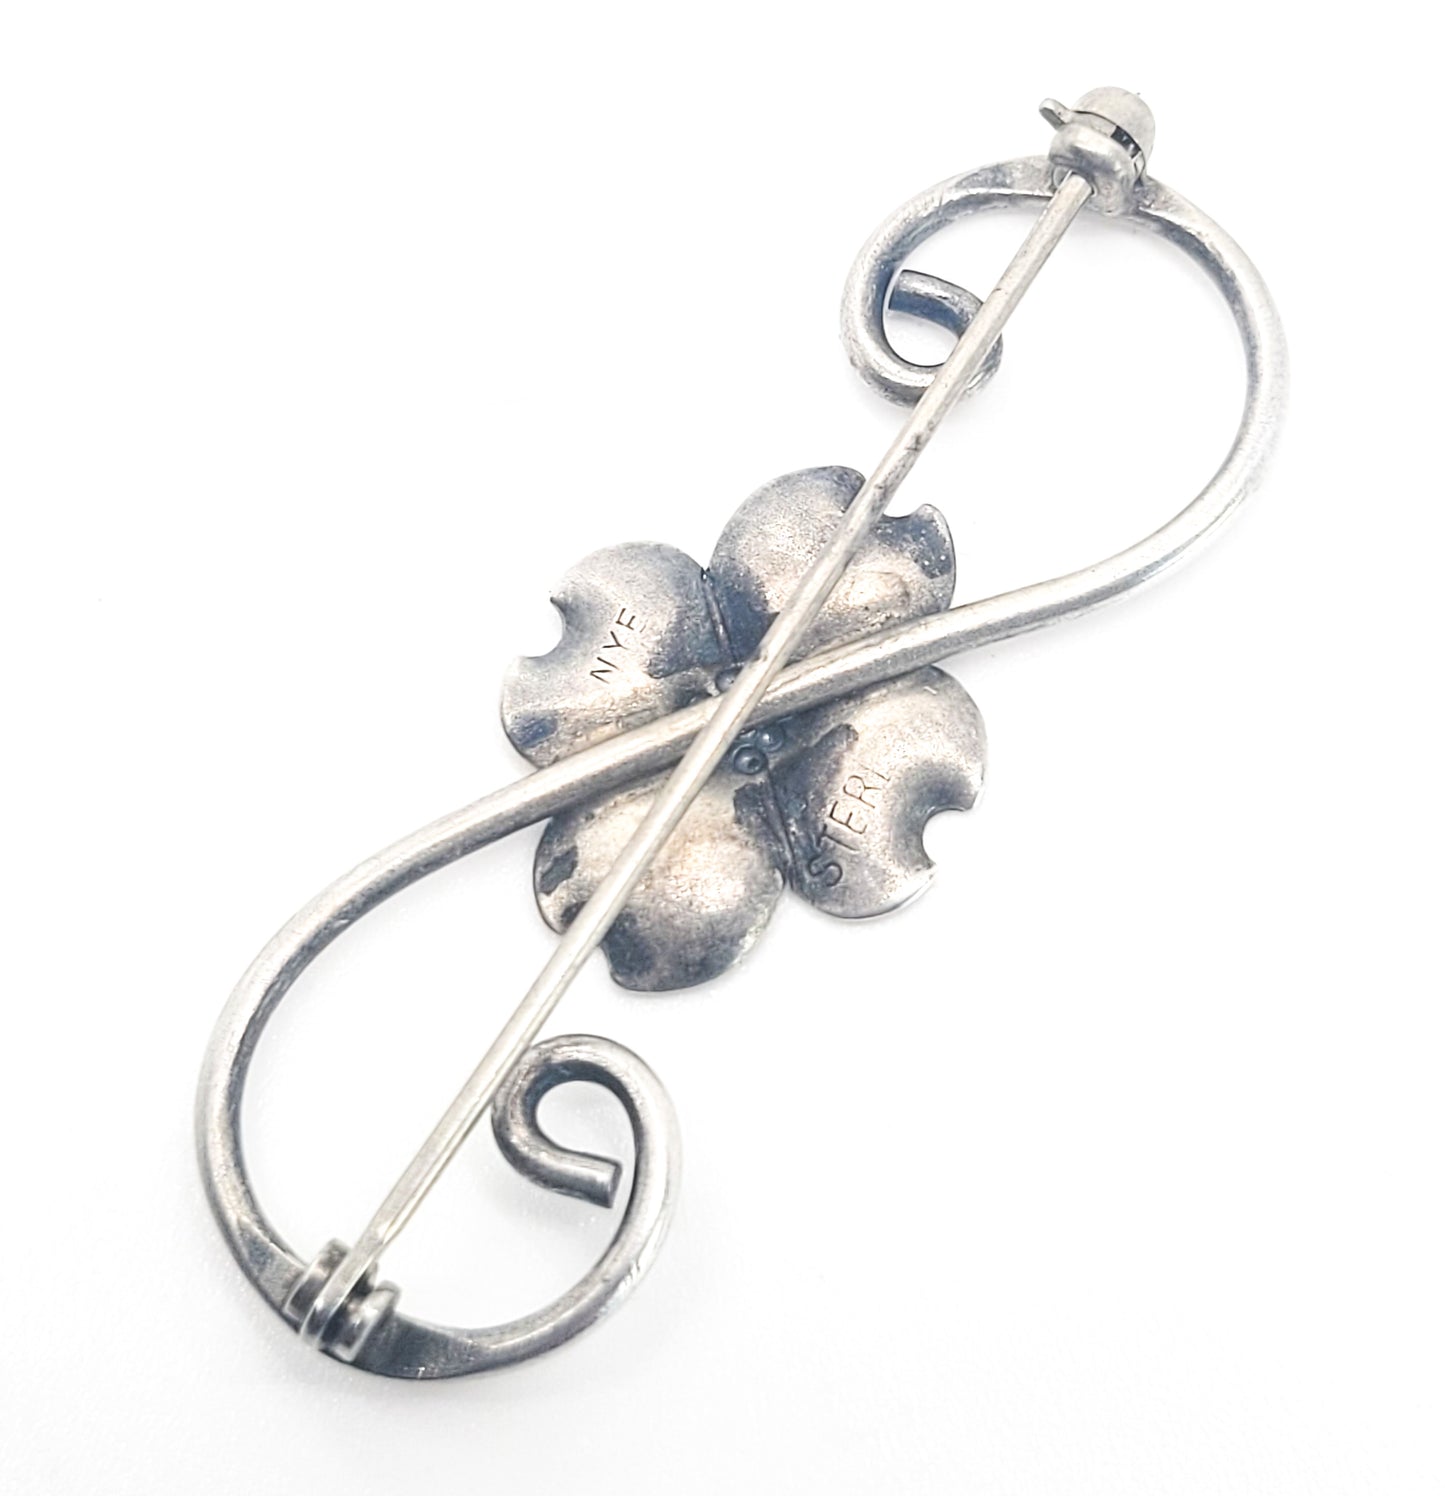 Dogwood Stuart NYE vintage sterling silver flower brooch